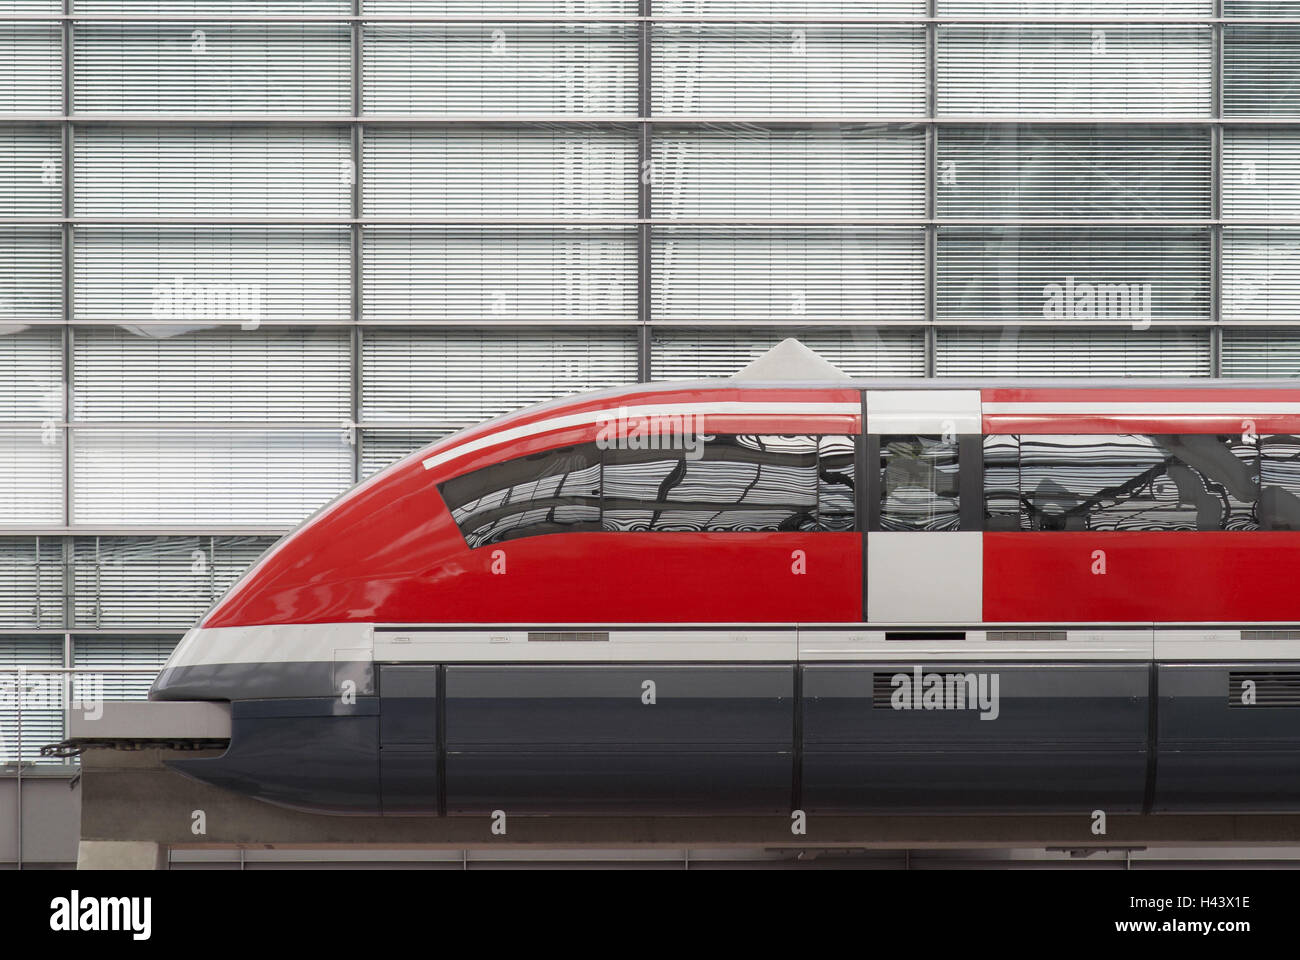 Transrapid Zug, Reisebus, Spiegelung, Betonsockel, Architektur, Flughafen, München, Stockfoto